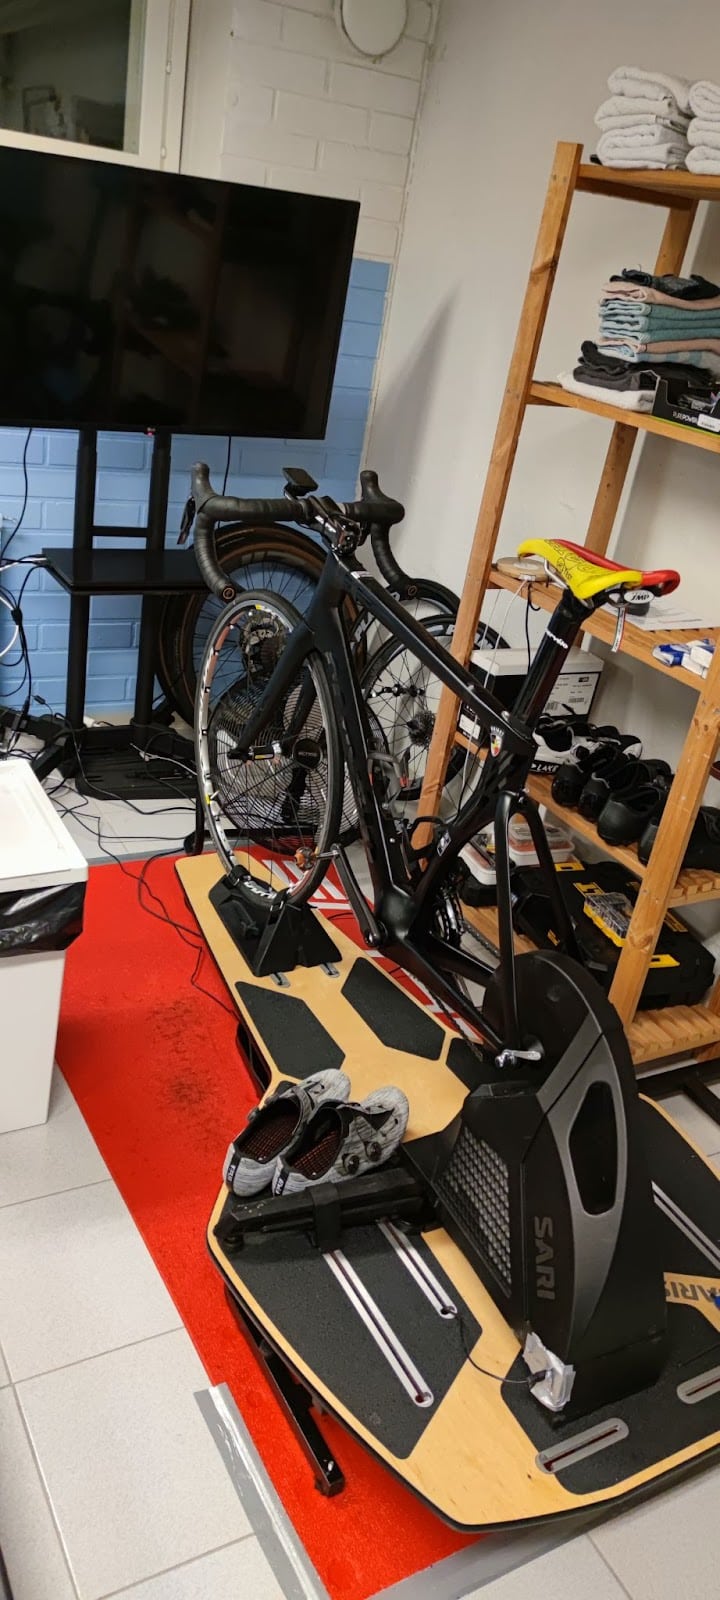 Alex Coh's indoor cycling setup